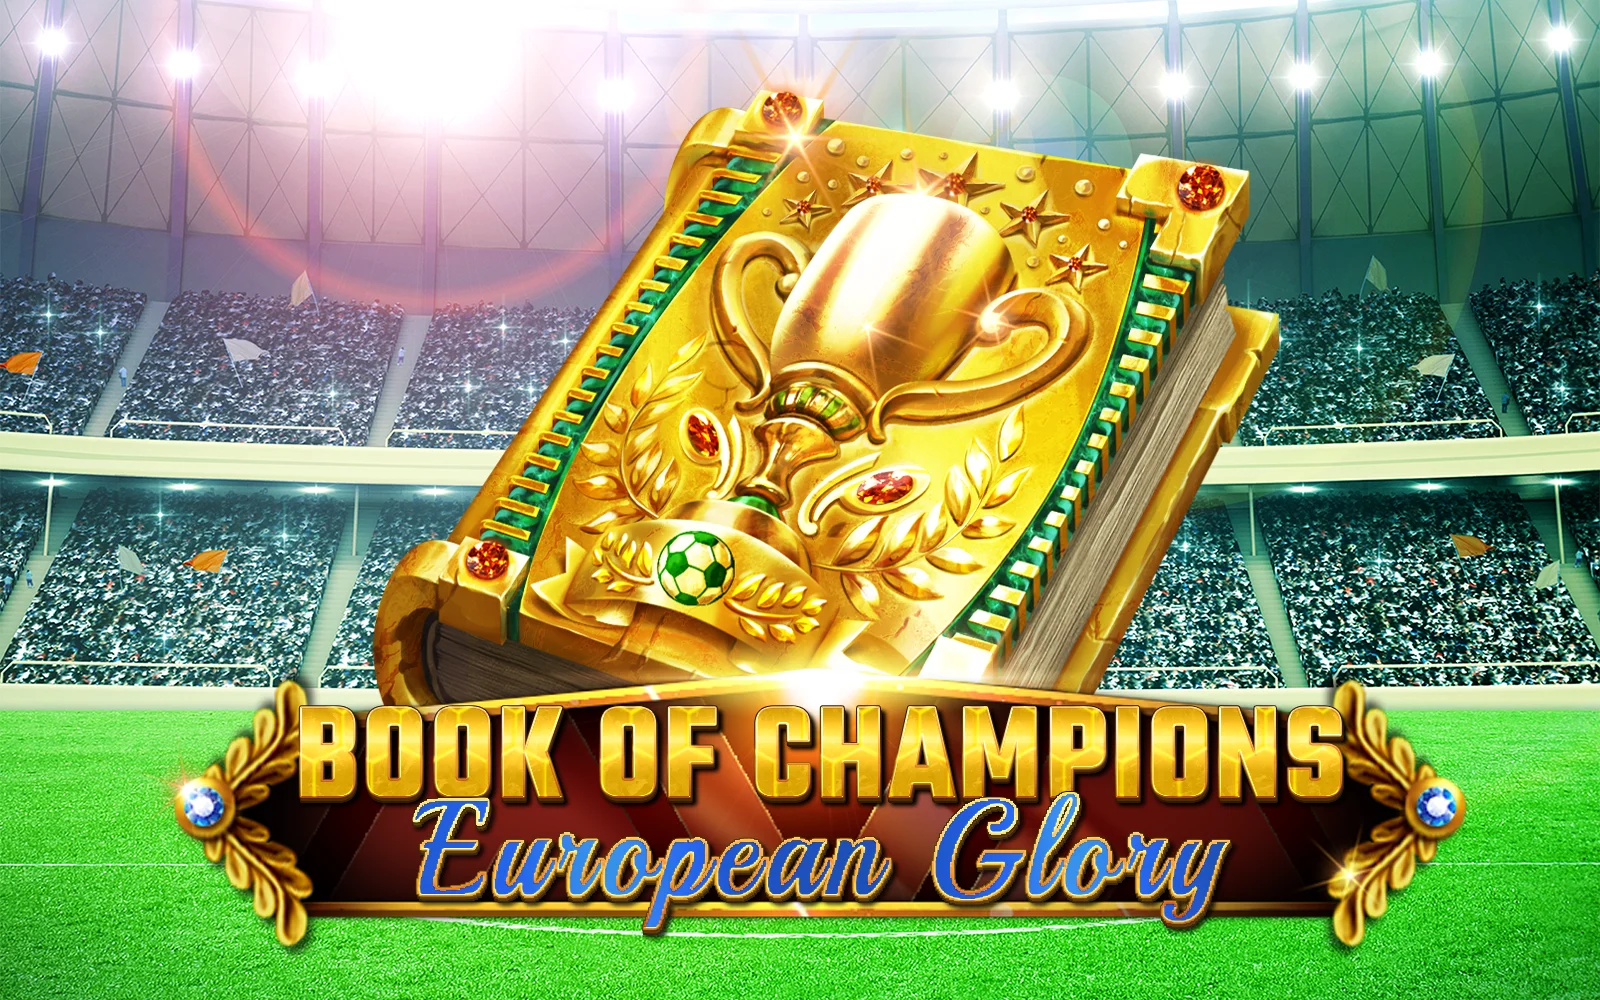 Jouer à Book Of Champions - European Glory sur le casino en ligne Starcasino.be